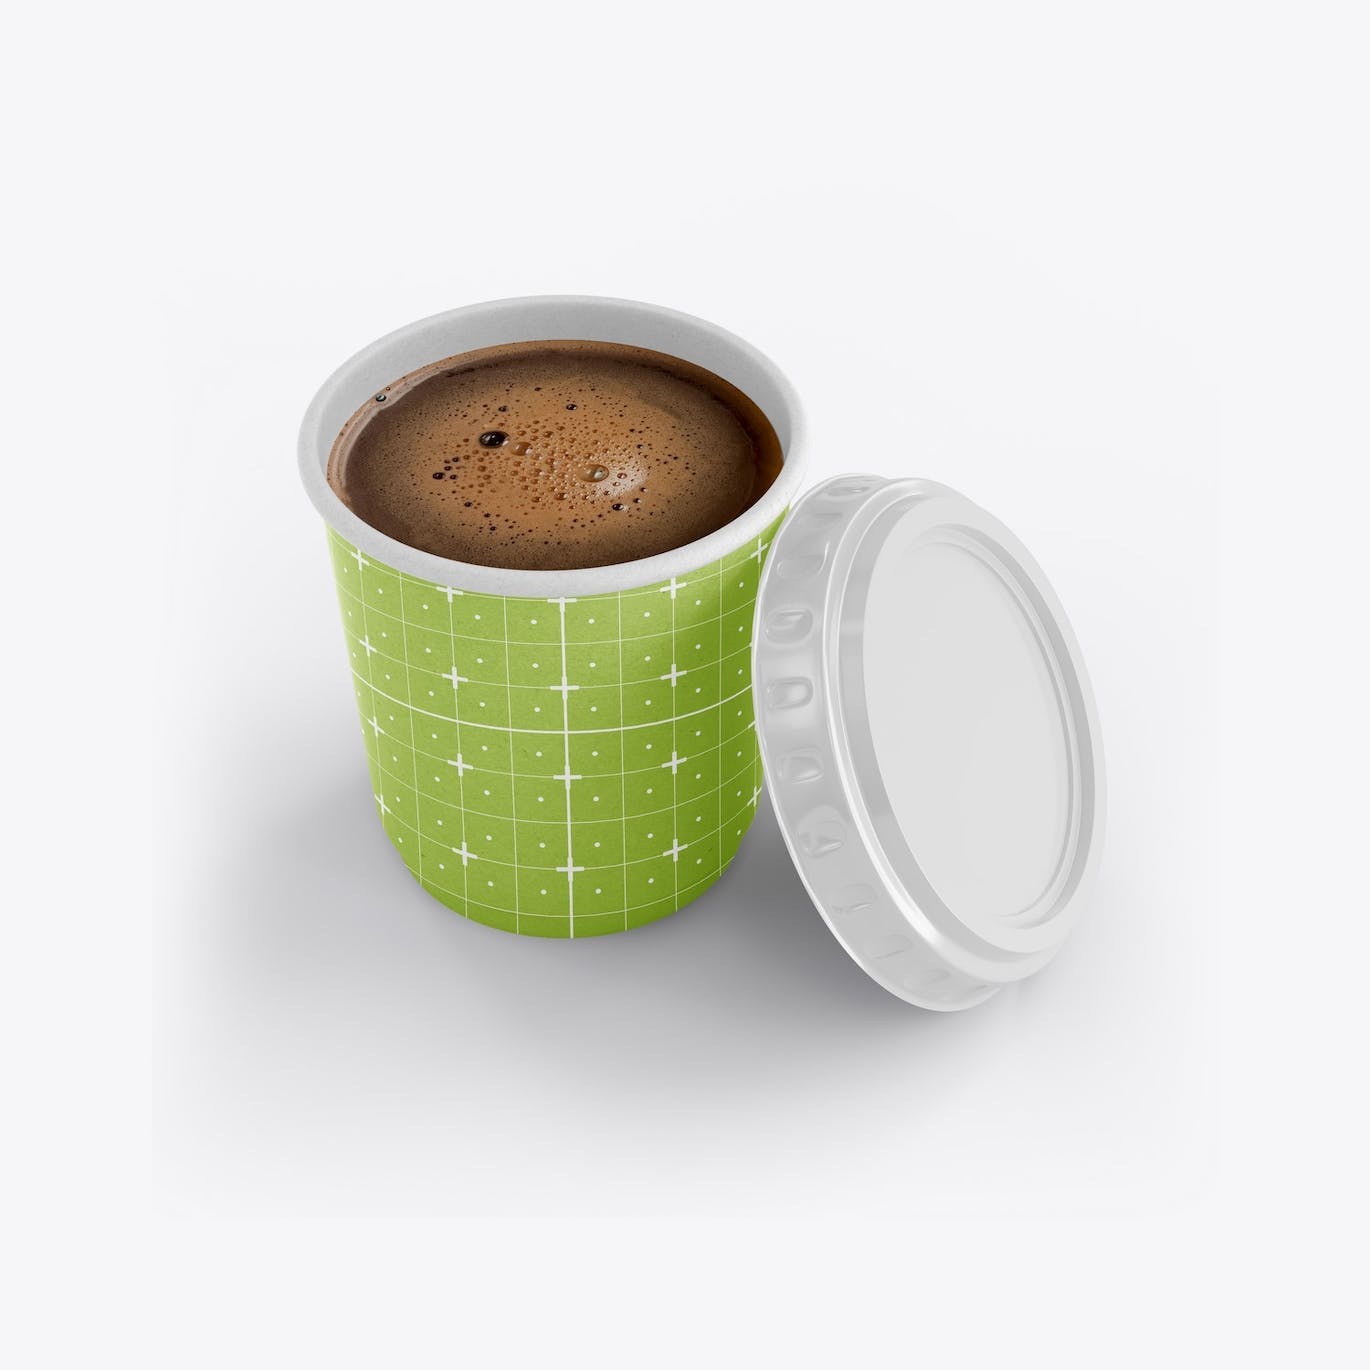 盖子纸咖啡杯品牌包装设计样机套装 Set Paper Coffee Cup With Sleeve Mockup 样机素材 第4张